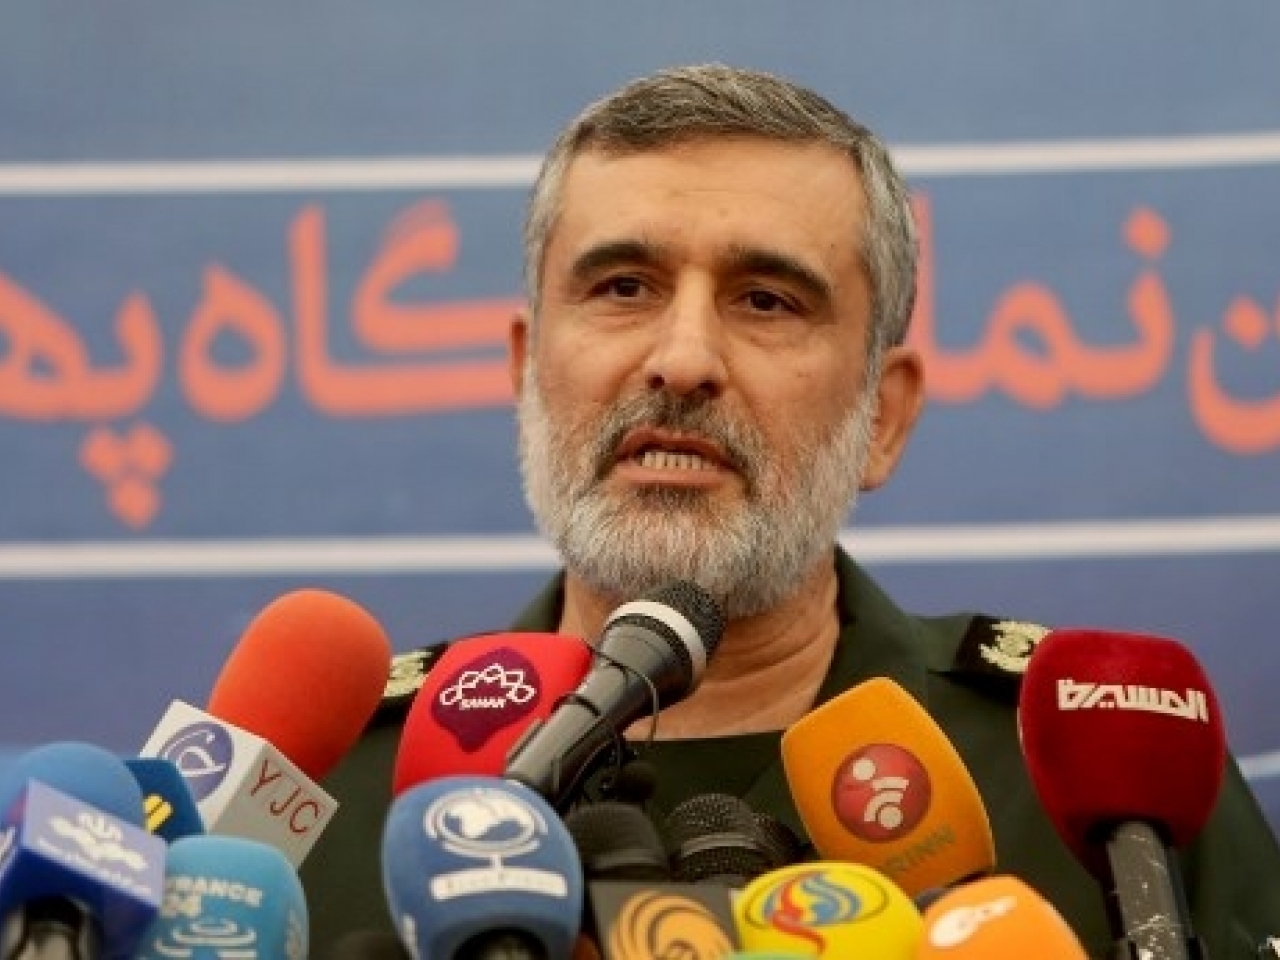 Tư lệnh Iran lên tiếng nhận trách nhiệm khi ra lệnh bắn rơi máy bay Ukraine (ảnh: CNN)